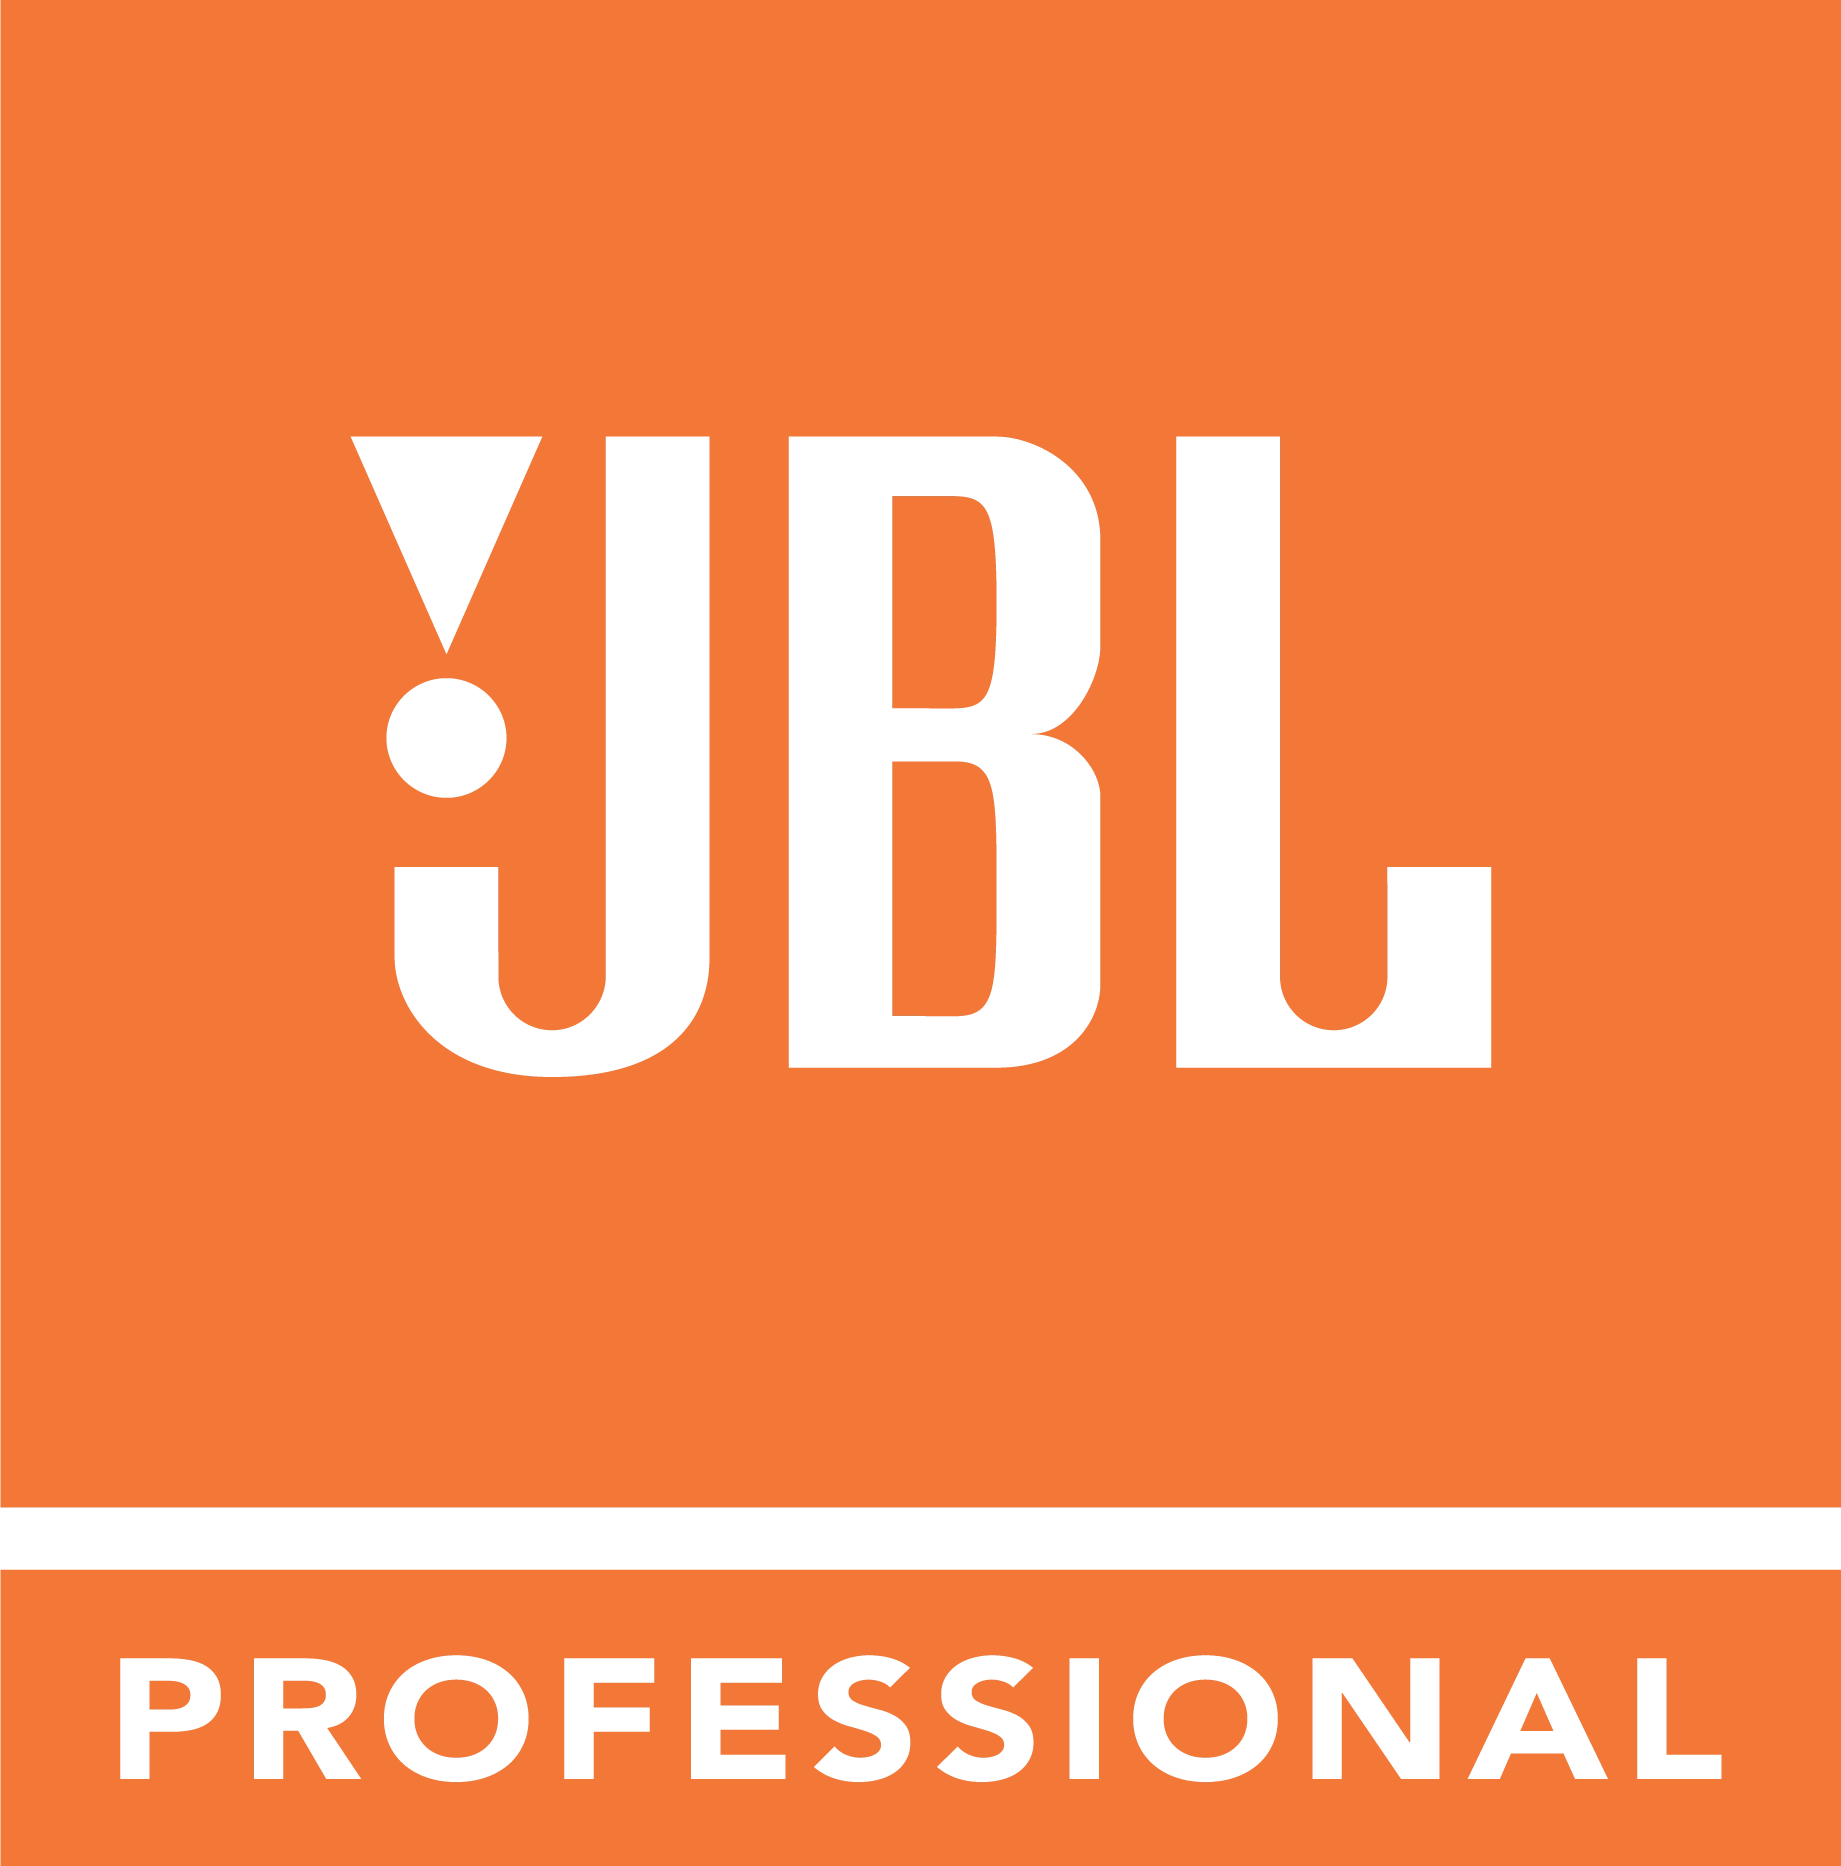 <p>Компанию JBL Professional справедливо можно назвать легендарным производителем в мире профессионального звука. Используя ведущую методологию и инструментарий уже в течение 74 лет, она создает лучше по качеству и надежностью звуковое оборудование и каждый свой продукт разрабатывает с нуля.</p>
<p>Такой подход к делу не только обеспечивает компании JBL длительный успех на рынке, но и дает блестящий результат, отраженный в каждом продукте, известный профессионалами и начинающими как &laquo;фирменный звук JBL&raquo;. В течение трех поколений профессиональное звуковое оборудование от JBL пользуется неизменным спросом среди звуковых специалистов по всему миру.</p>
<p>Украинско-Британское совместное предприятие Комора является официальным дистрибьютором компании JBL Professional в Украине. Мы предлагаем широкий ассортимент профессионального звукового оборудования, включая универсальные, инсталляционные, туровые акустические системы, студийную акустику и системы для кинотеатров и караоке.</p>
<p>Наши специалисты помогают подобрать оптимальный звуковой комплект в соответствии с потребностями заказчика.</p>